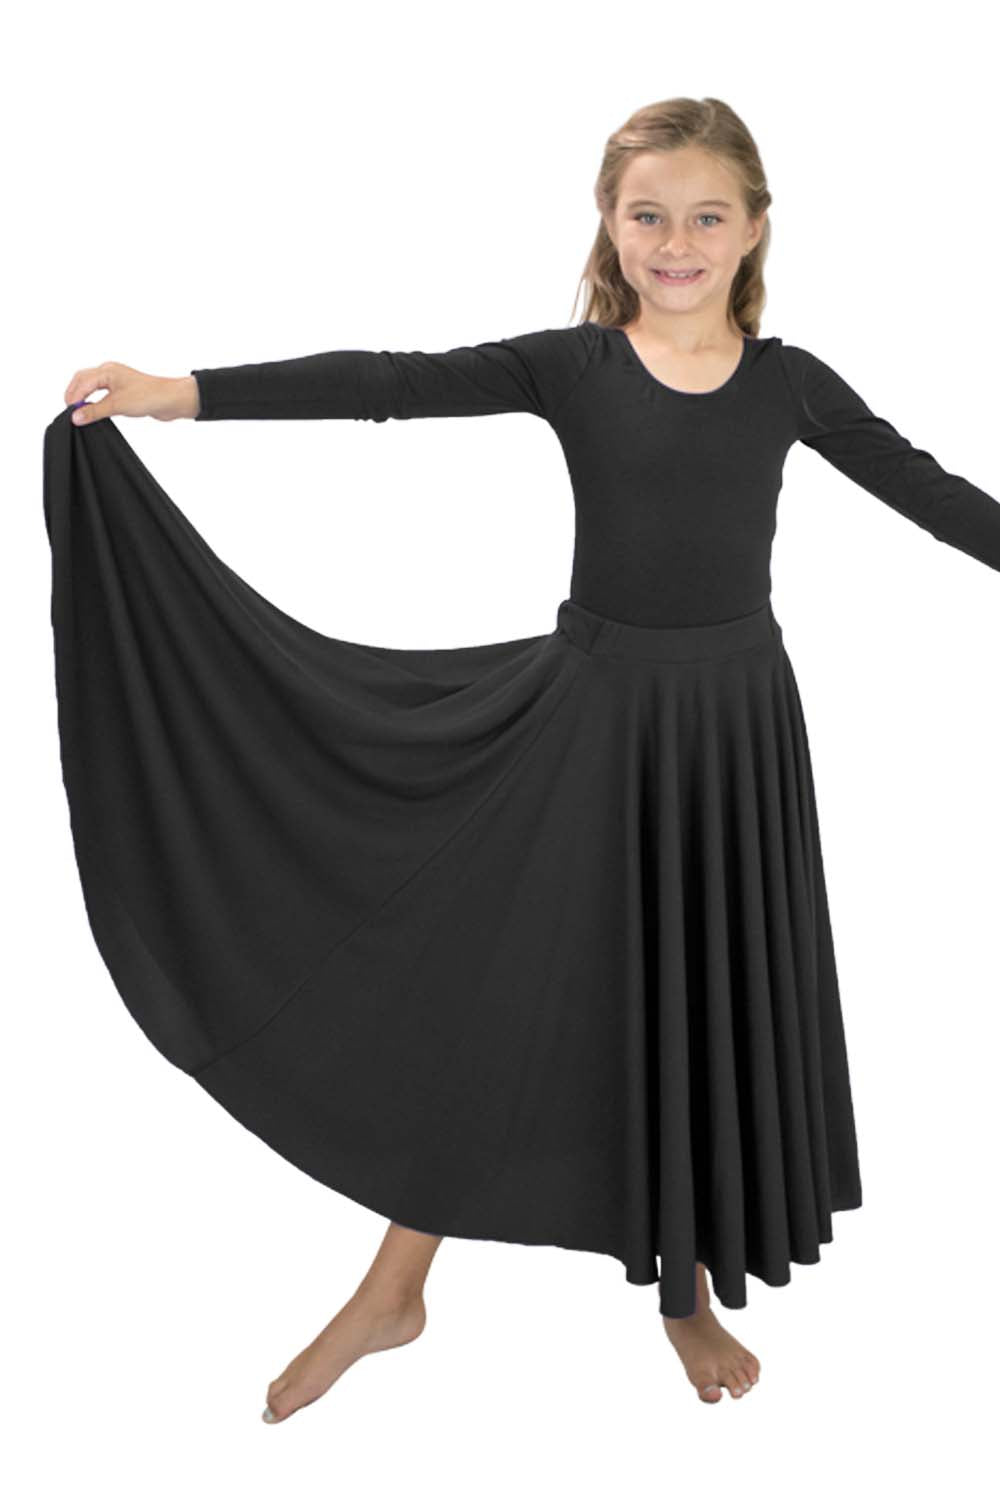 Girls' Liturgical 540 Degree 3-Panel Skirt